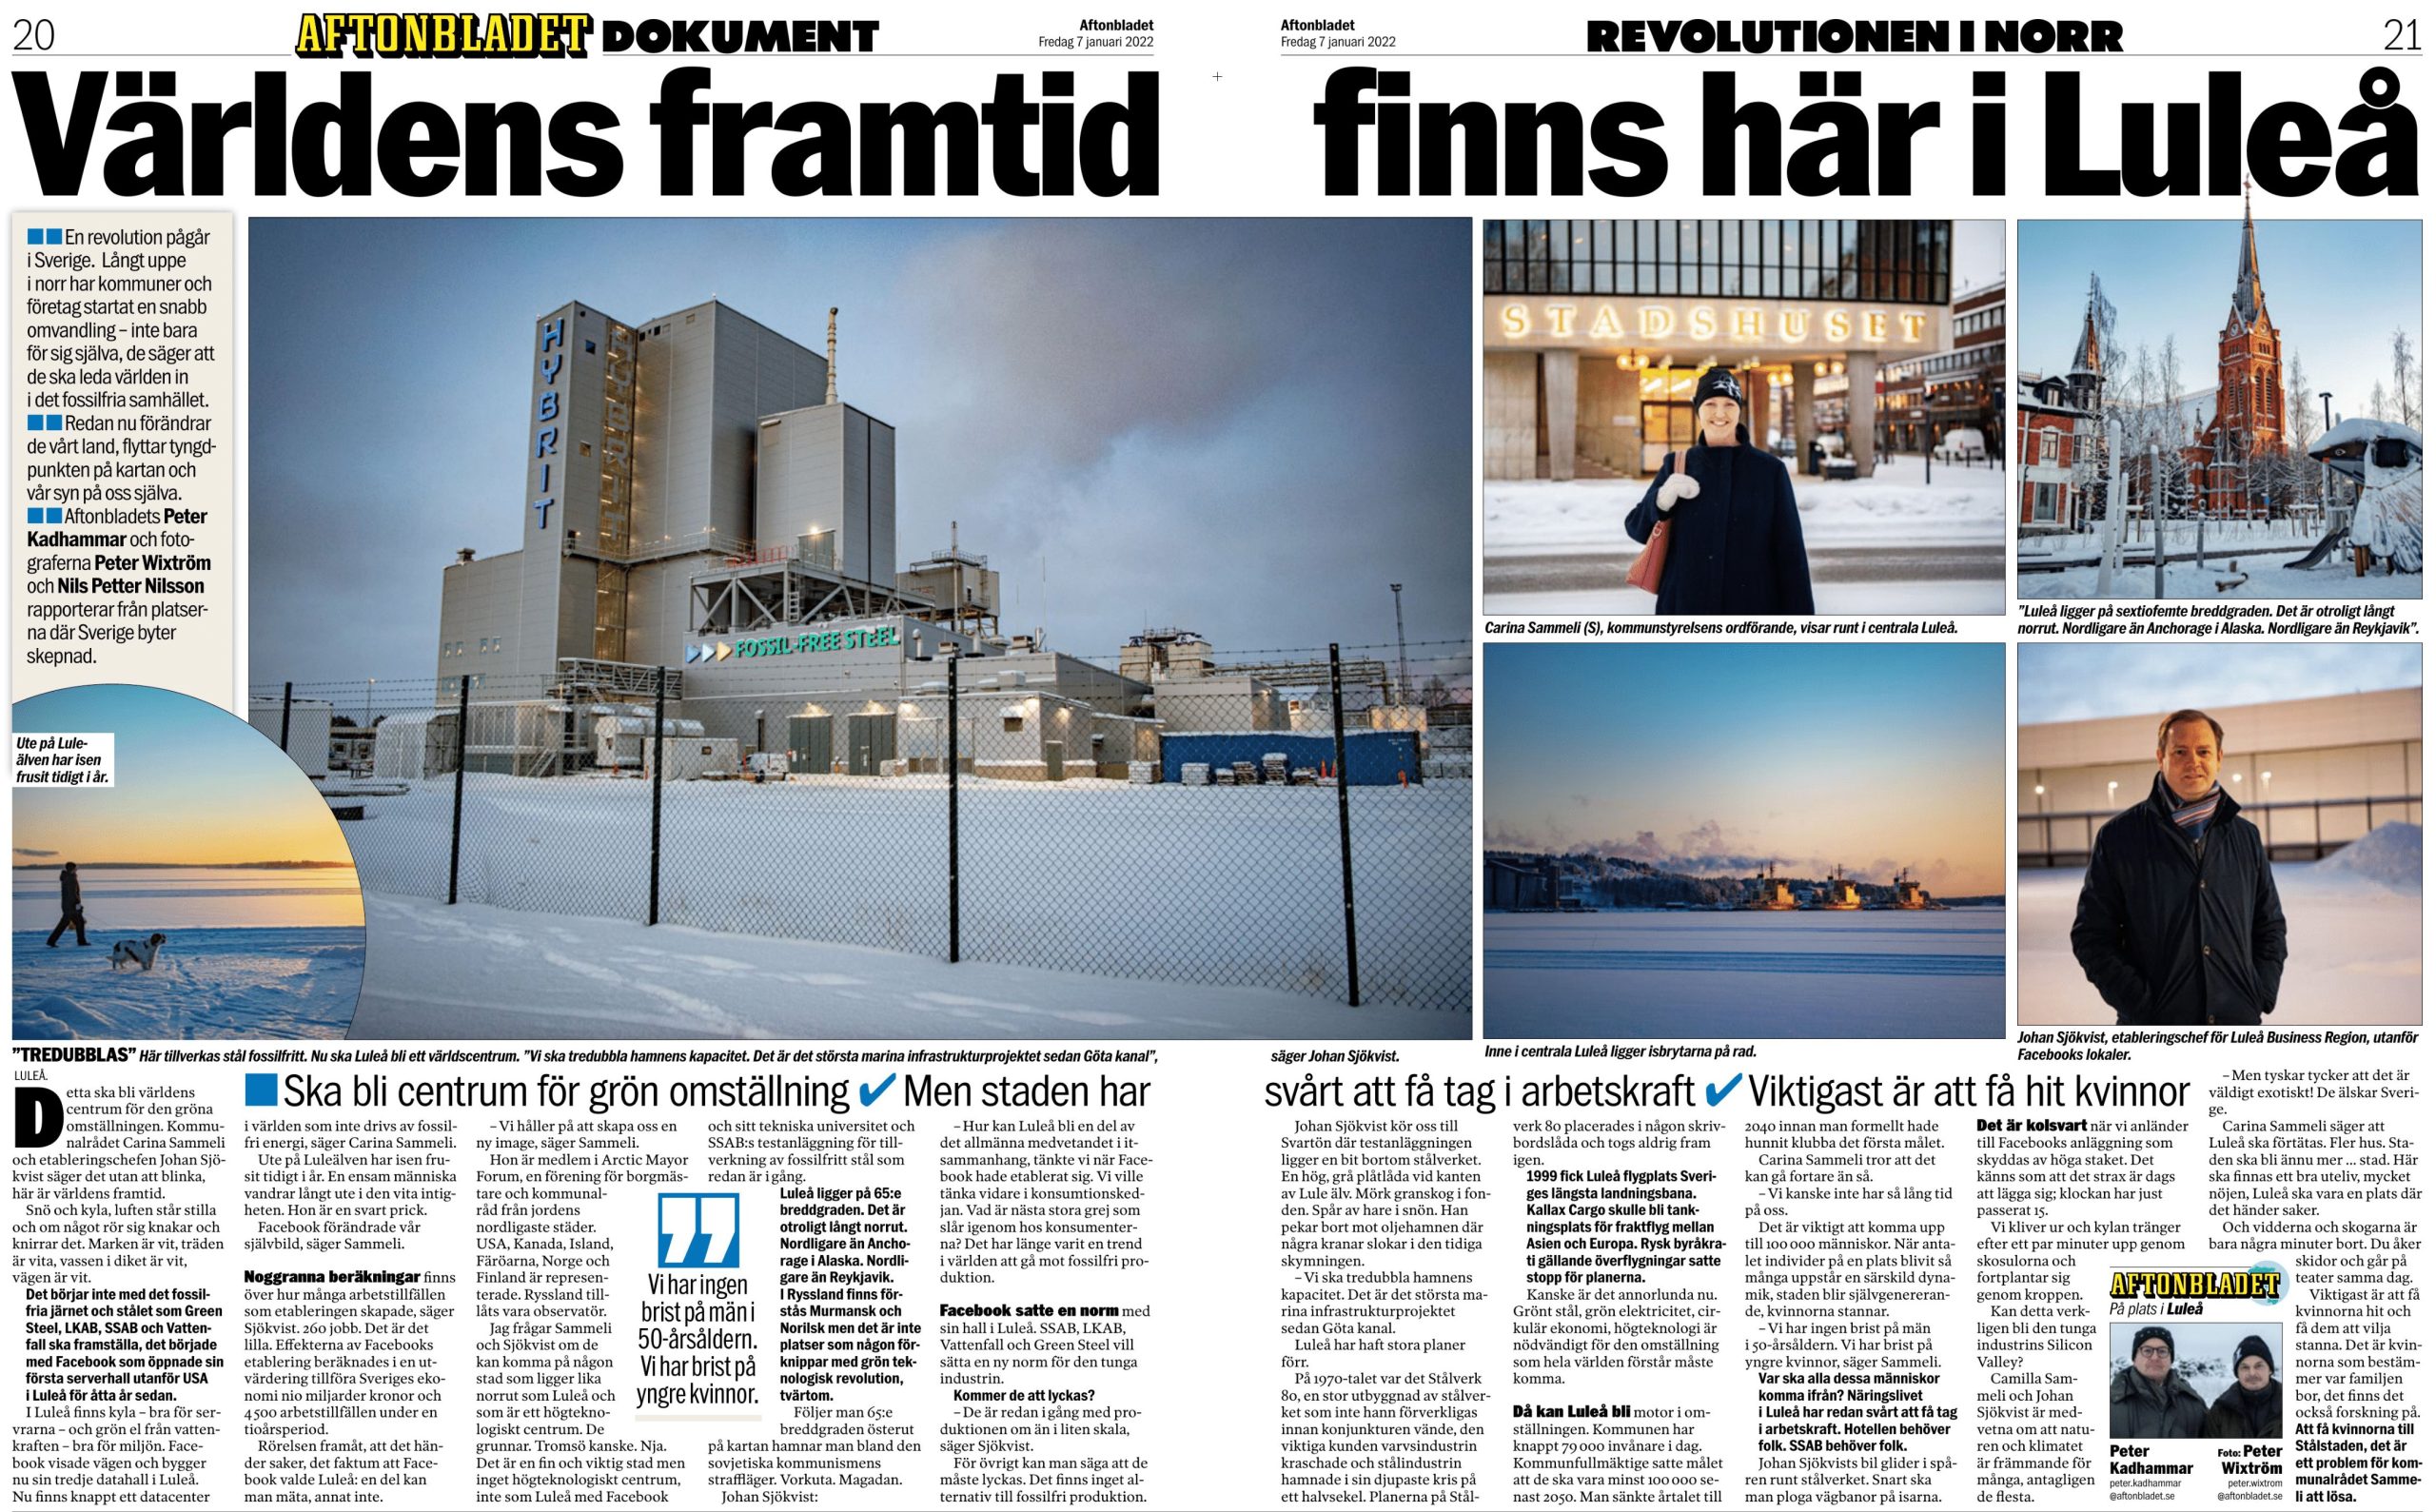 Artikel i Aftonbladet: Världens framtid finns i Luleå